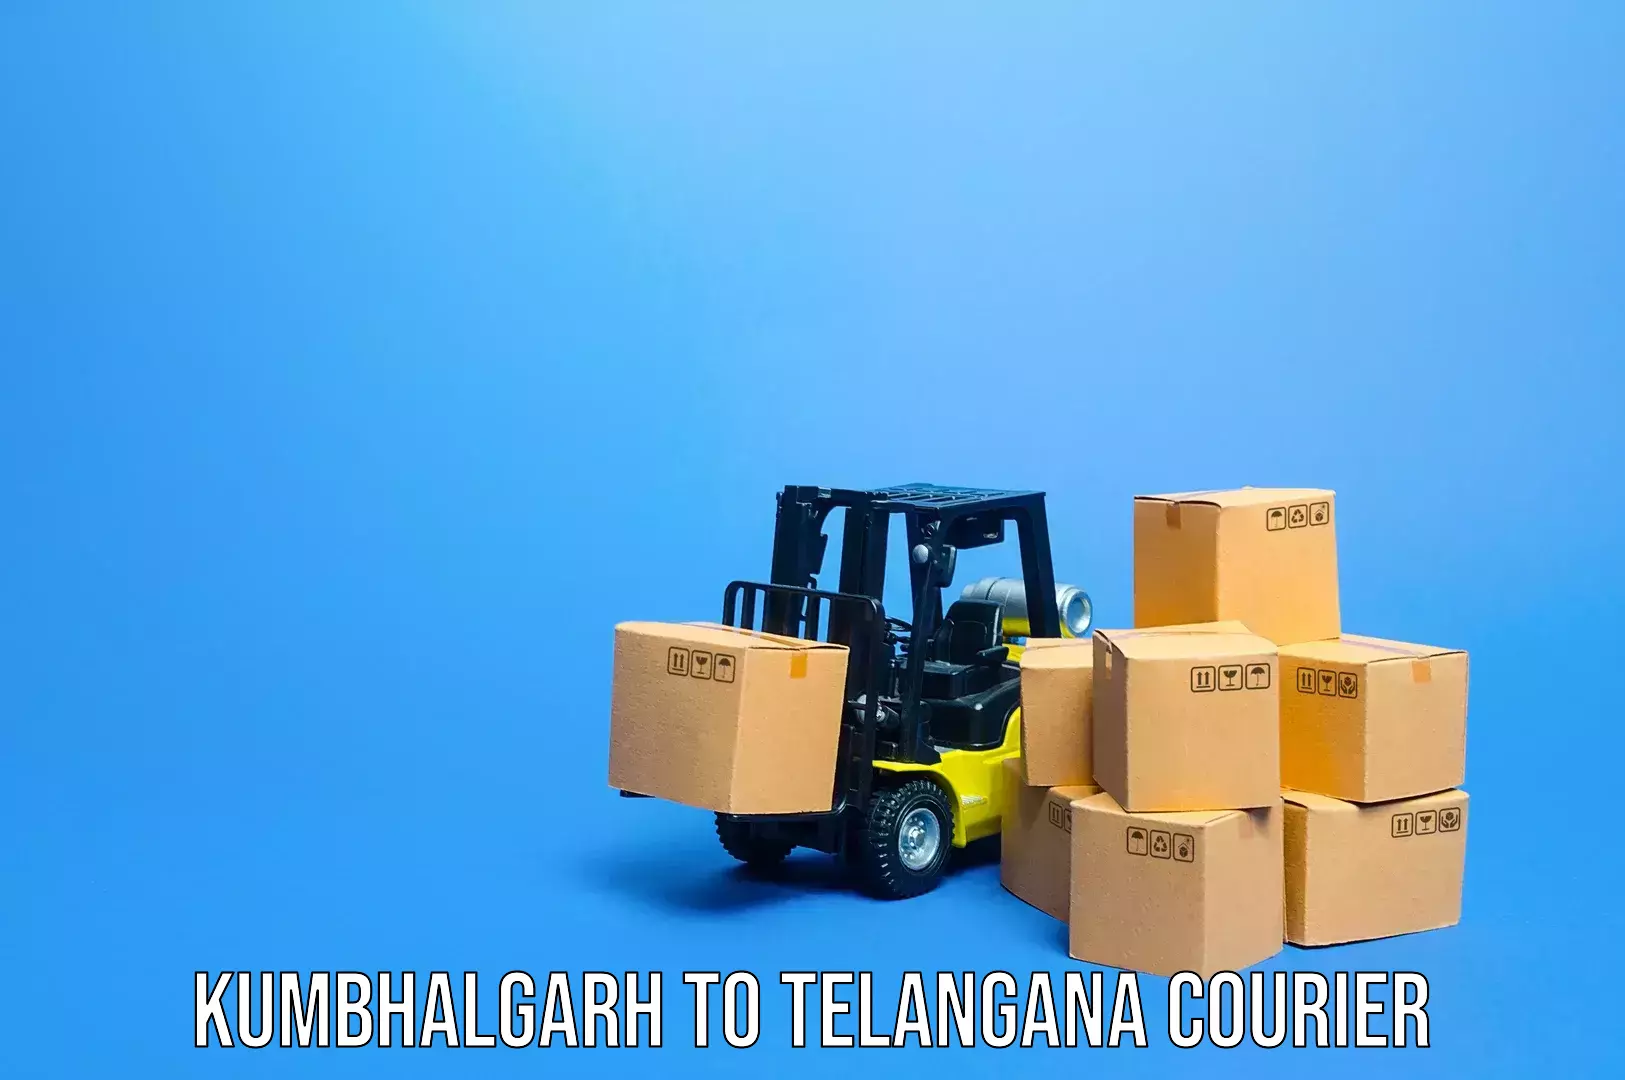 Luggage transport company Kumbhalgarh to Telangana